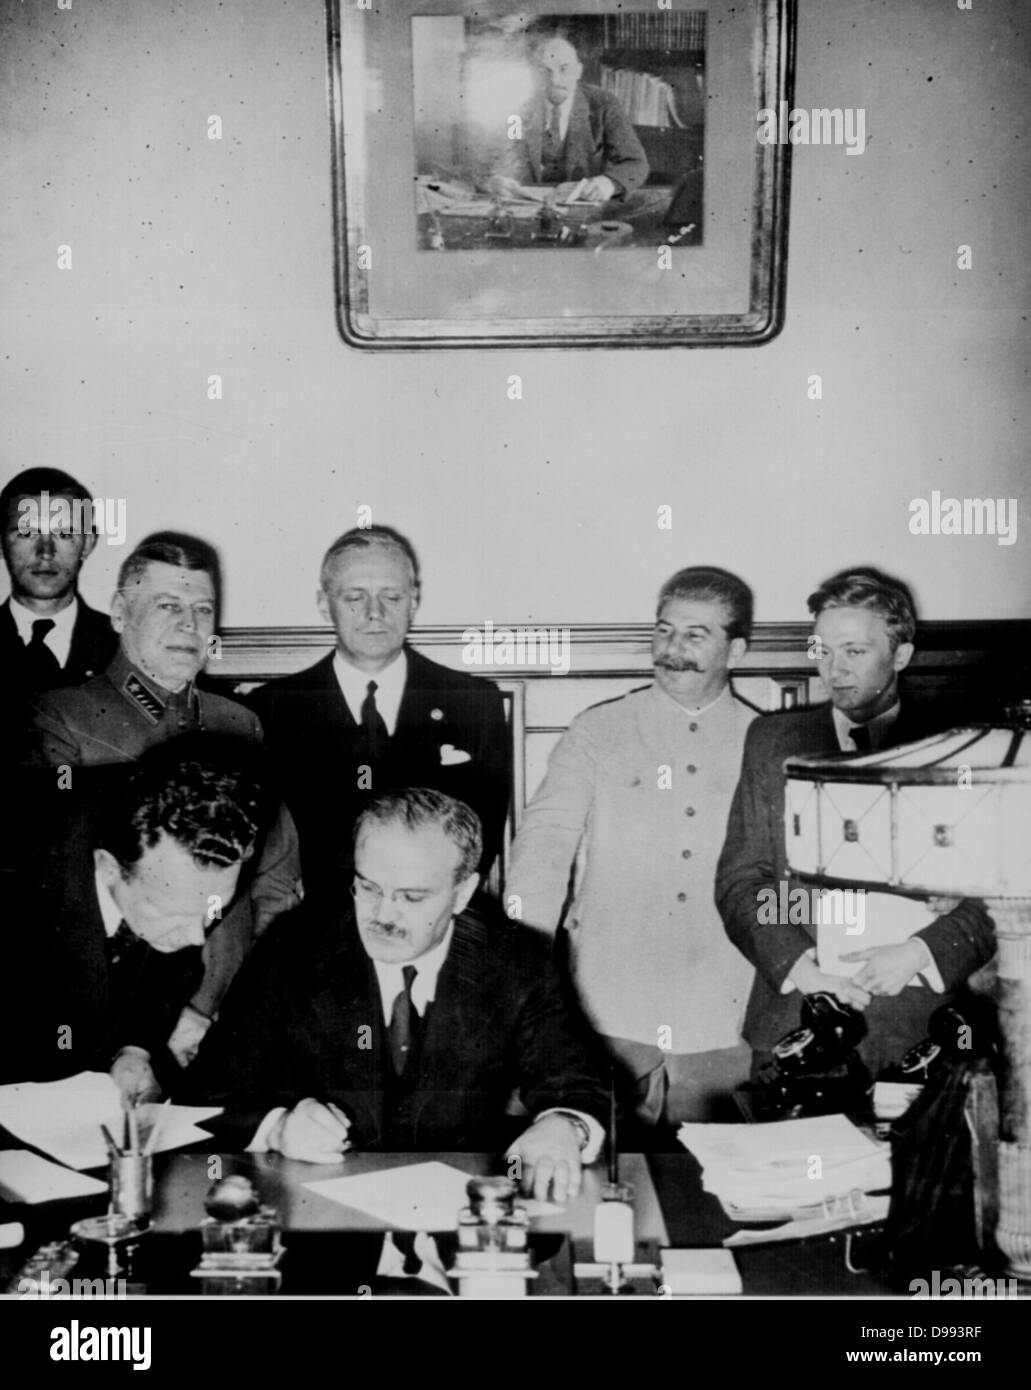 La Molotov-Ribbentrop patto, chiamato dopo il ministro degli esteri sovietico Molotov e il ministro degli esteri tedesco von Ribbentrop, era un accordo noto come il Trattato di Non-Aggression tra la Germania e l'Unione Sovietica[, firmato a Mosca il 23 agosto 1939. Foto Stock